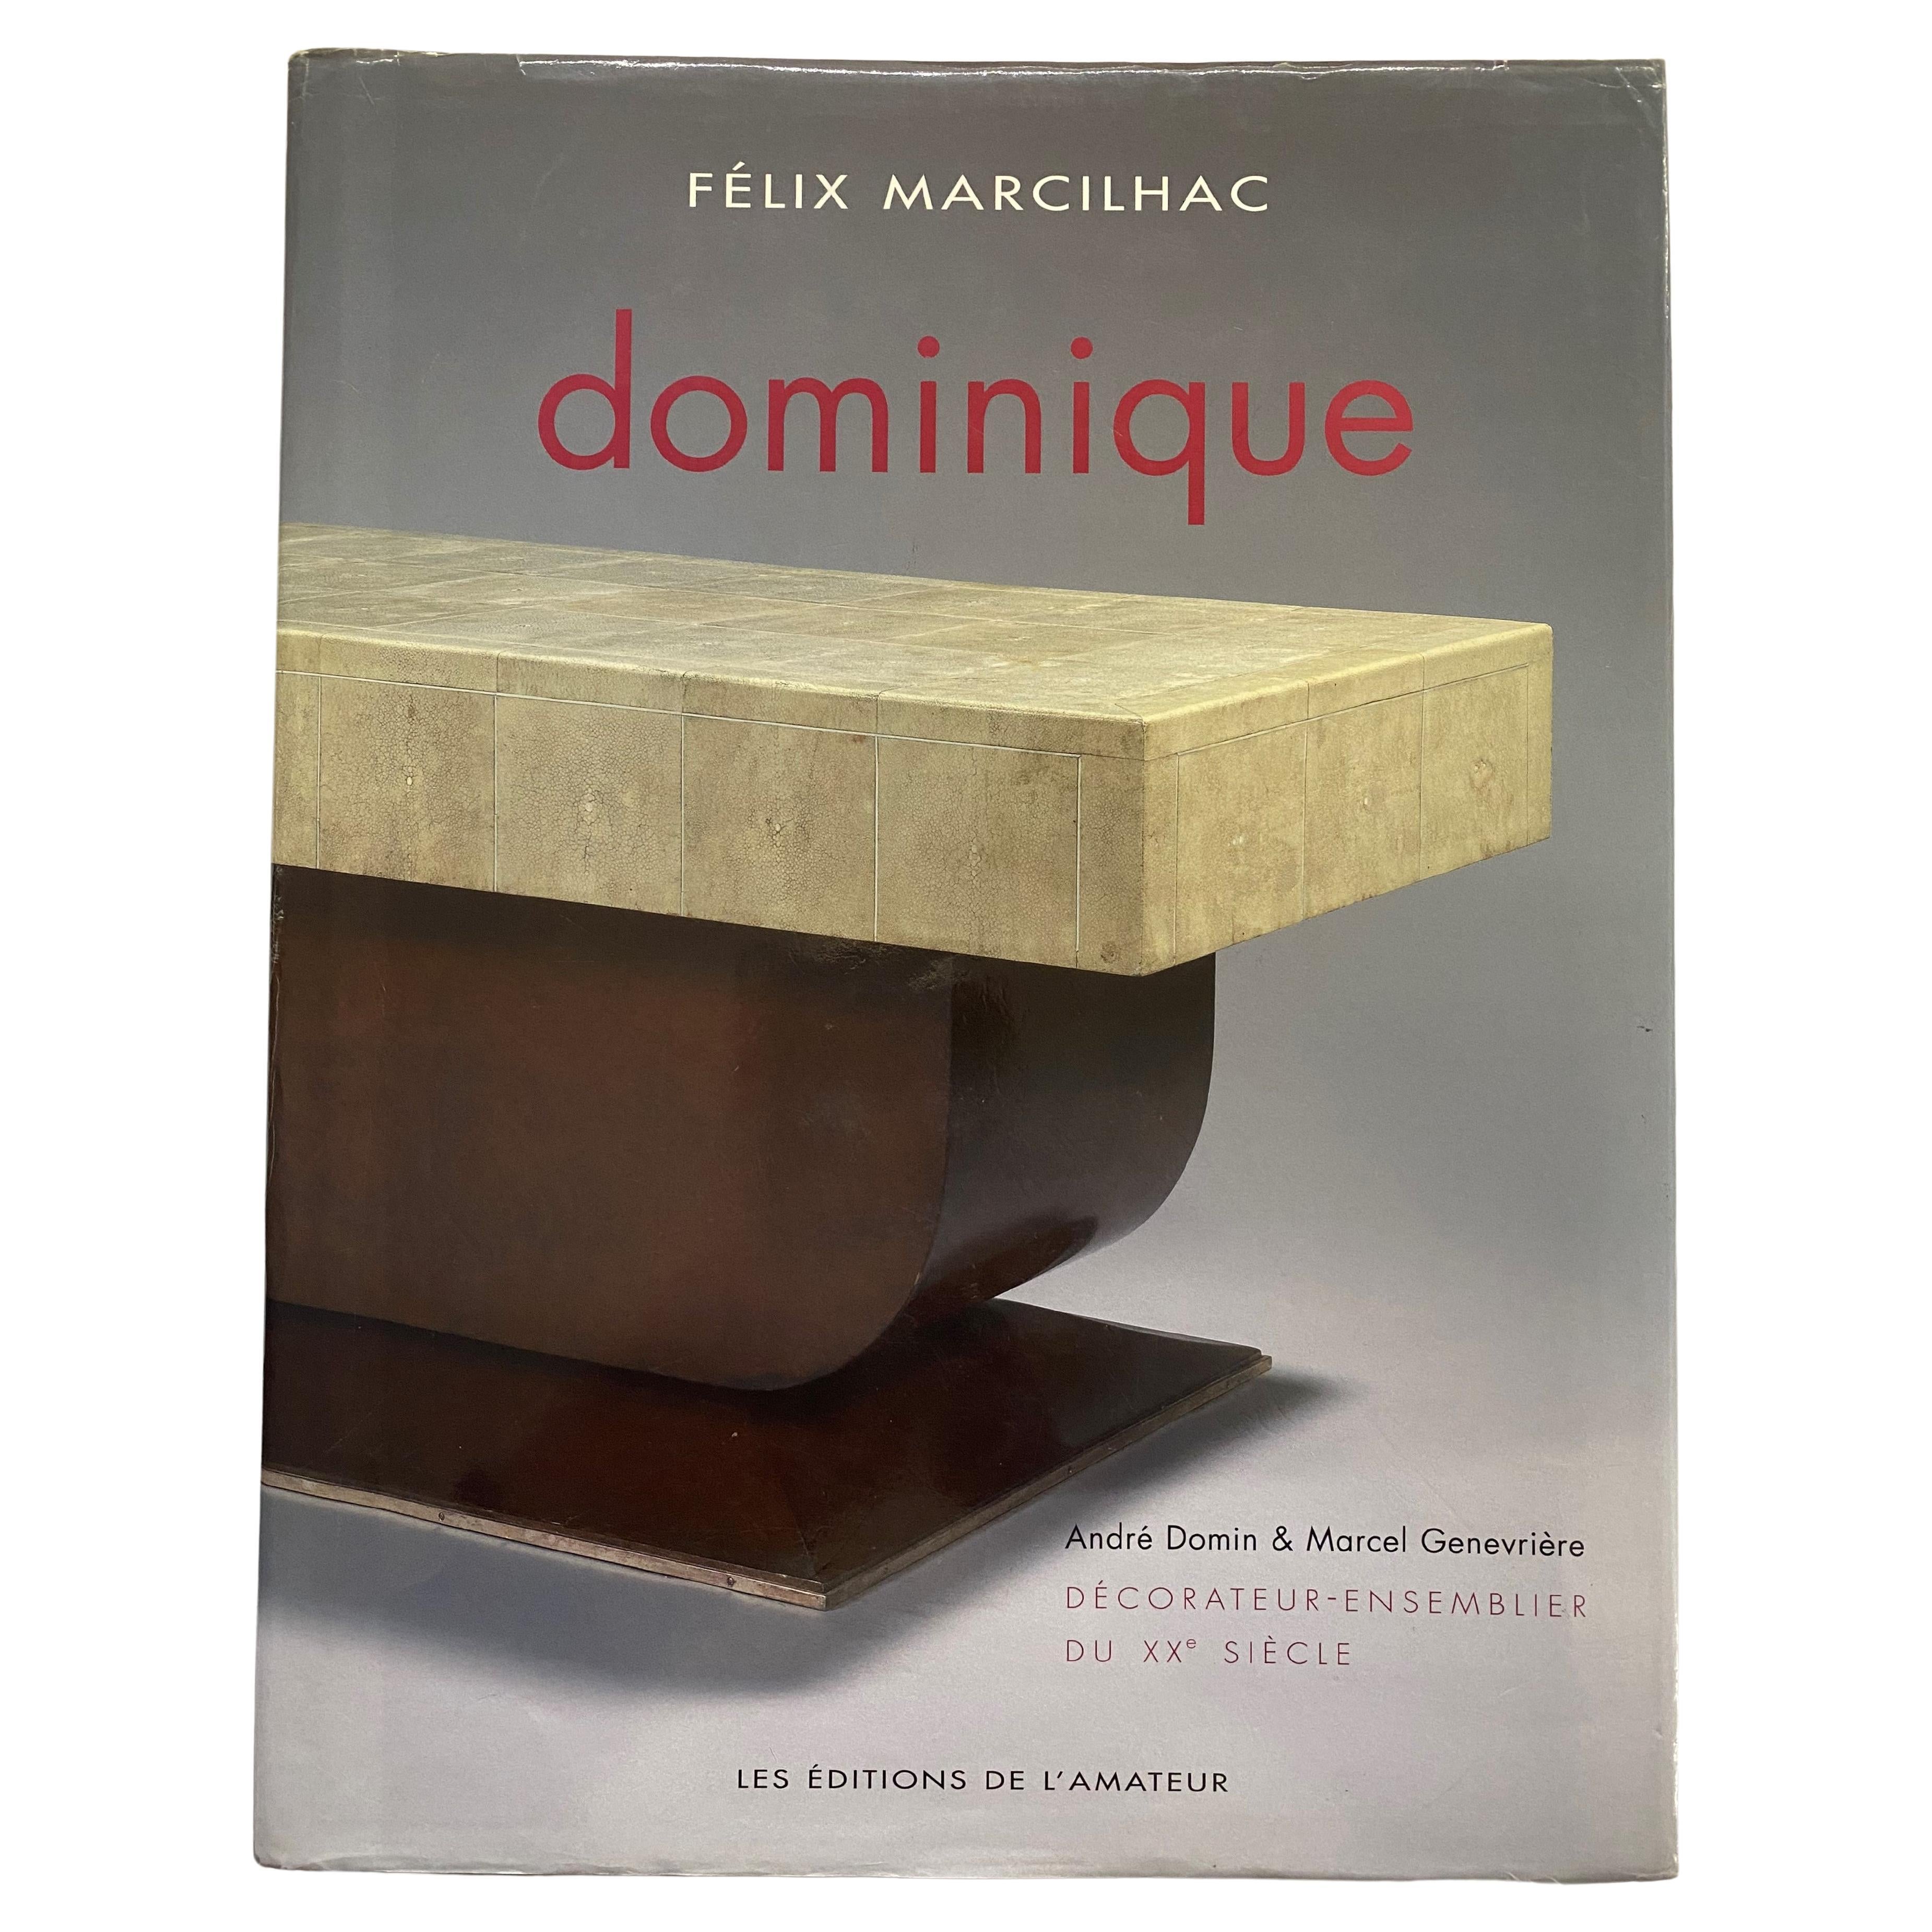 Dominique: Decorateur-Ensemblier Du XX Siecle von Felix Marcilhac (Buch)